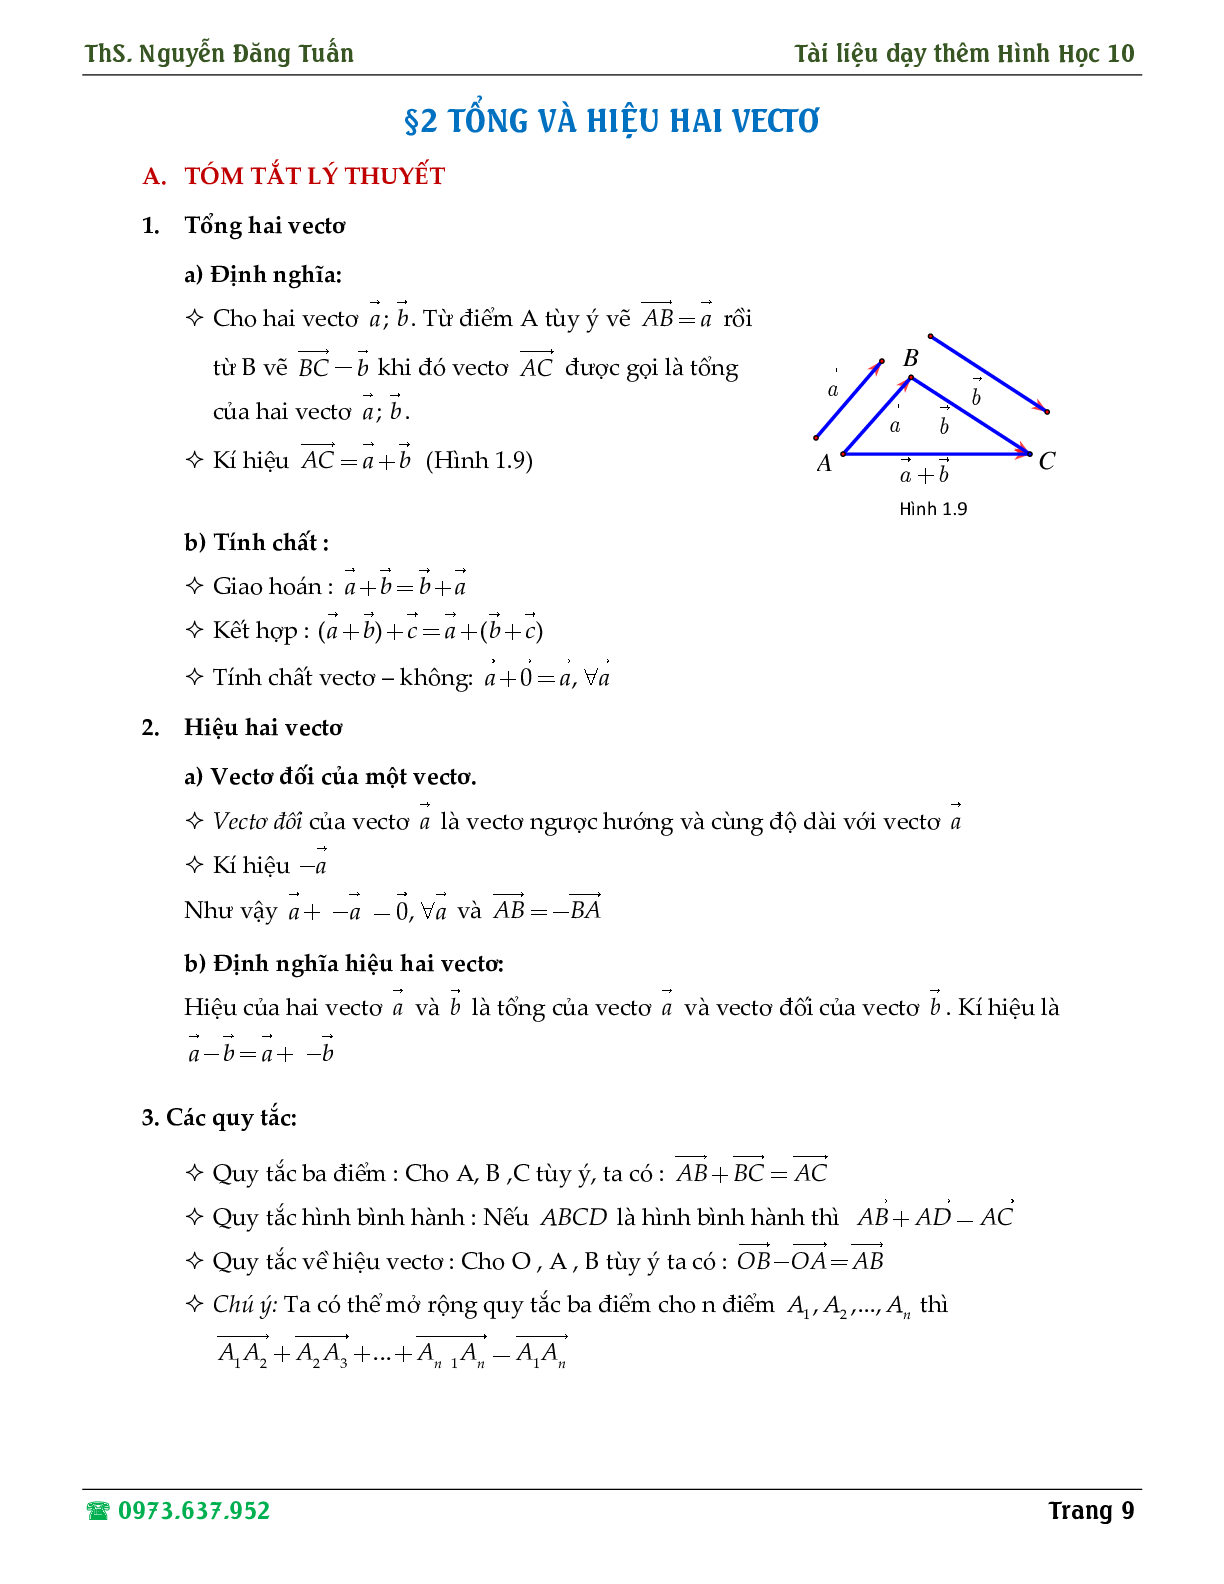 Hướng dẫn giải các dạng toán về định nghĩa vector, tổng và hiệu hai vector (trang 9)